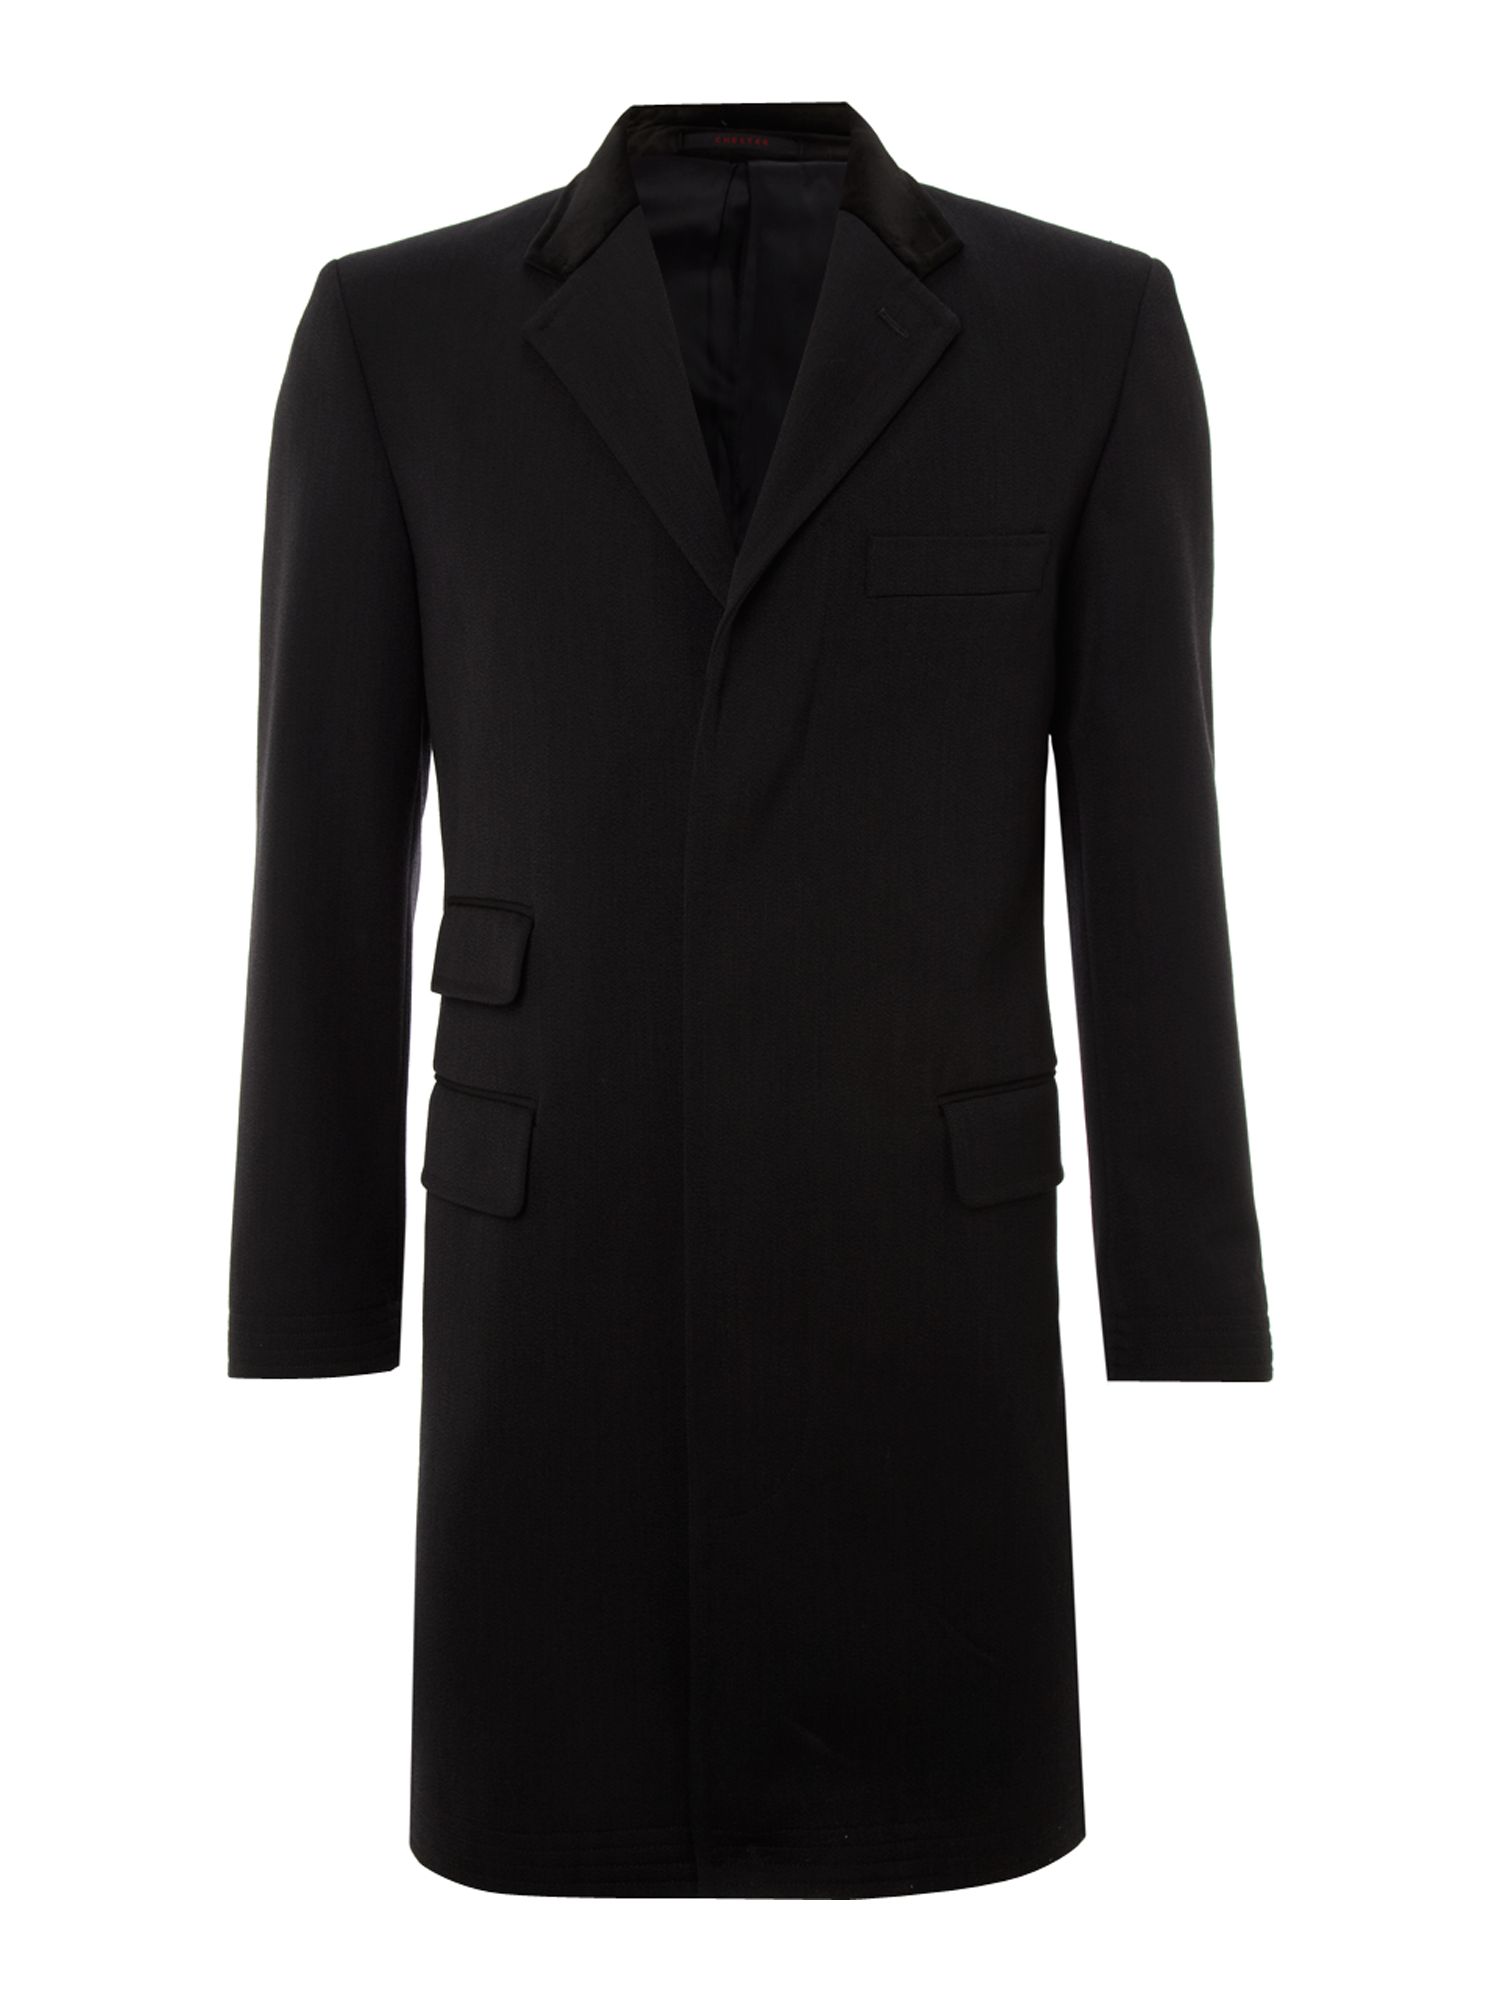 Chester barrie Wool Covert Coat in Black for Men | Lyst